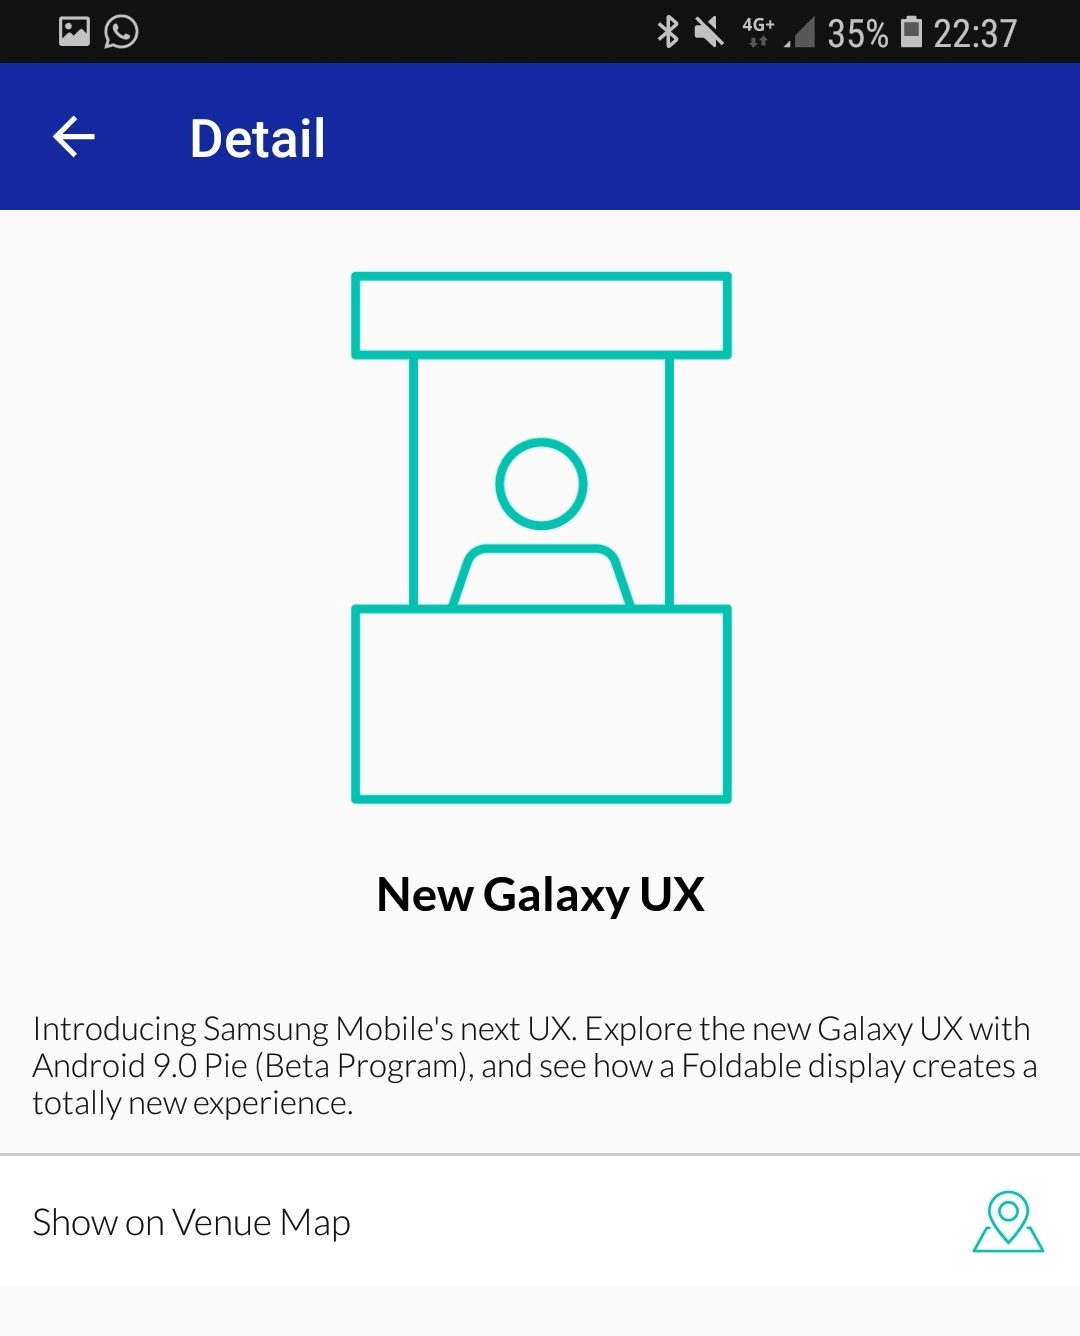 Samsung Developers conference app screenshot.